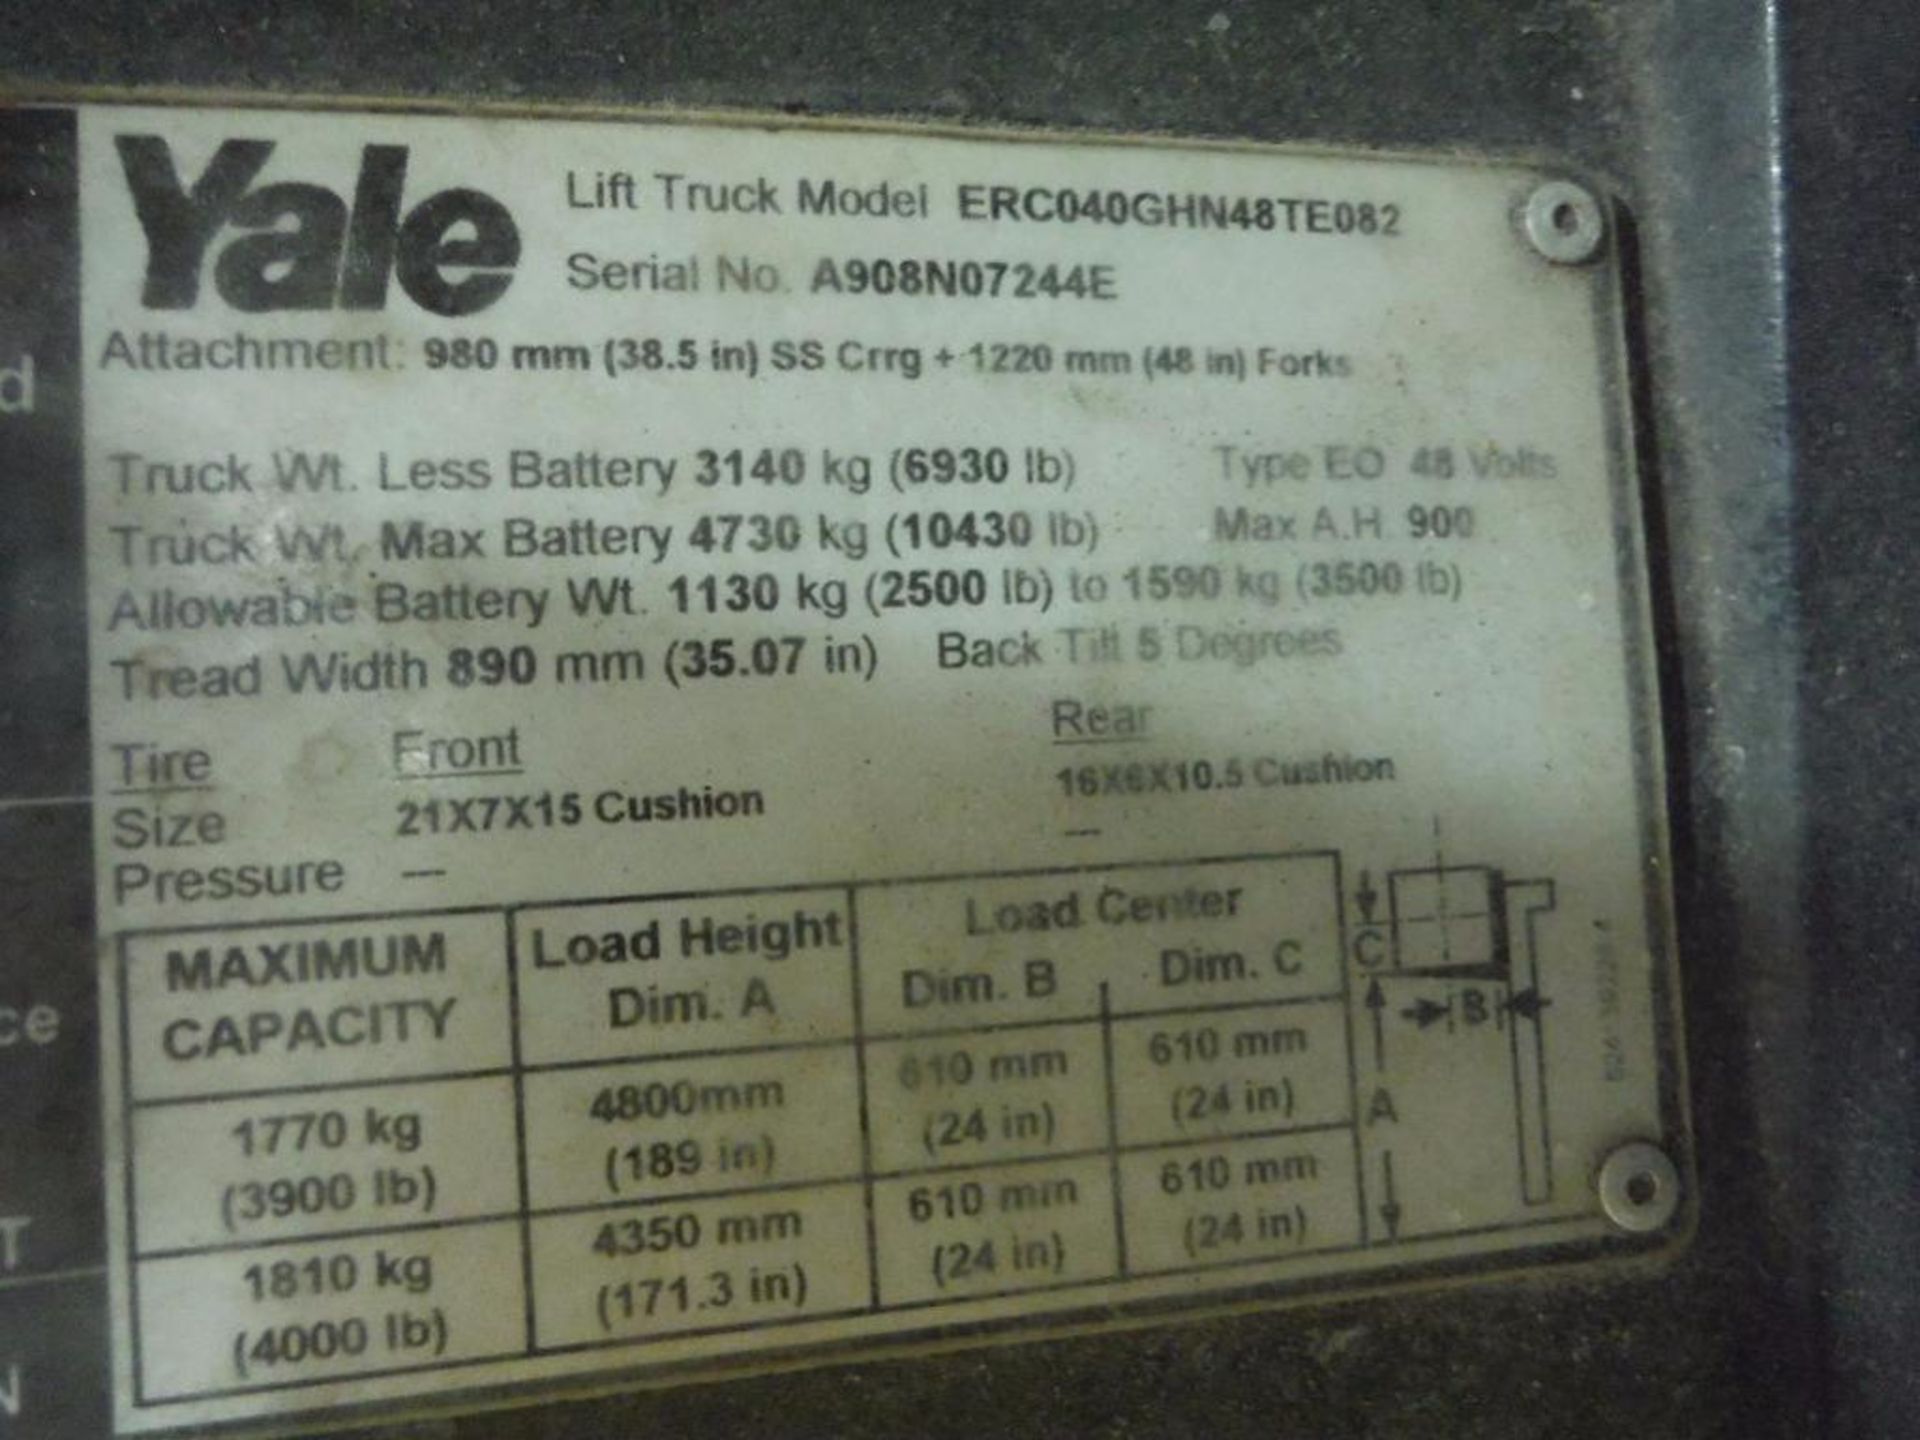 Yale 48 volt forklift, Model ERC040GHN48SE082, SN 4908N07244E, 3900 lb. capacity, 189 in. lift - Image 7 of 10